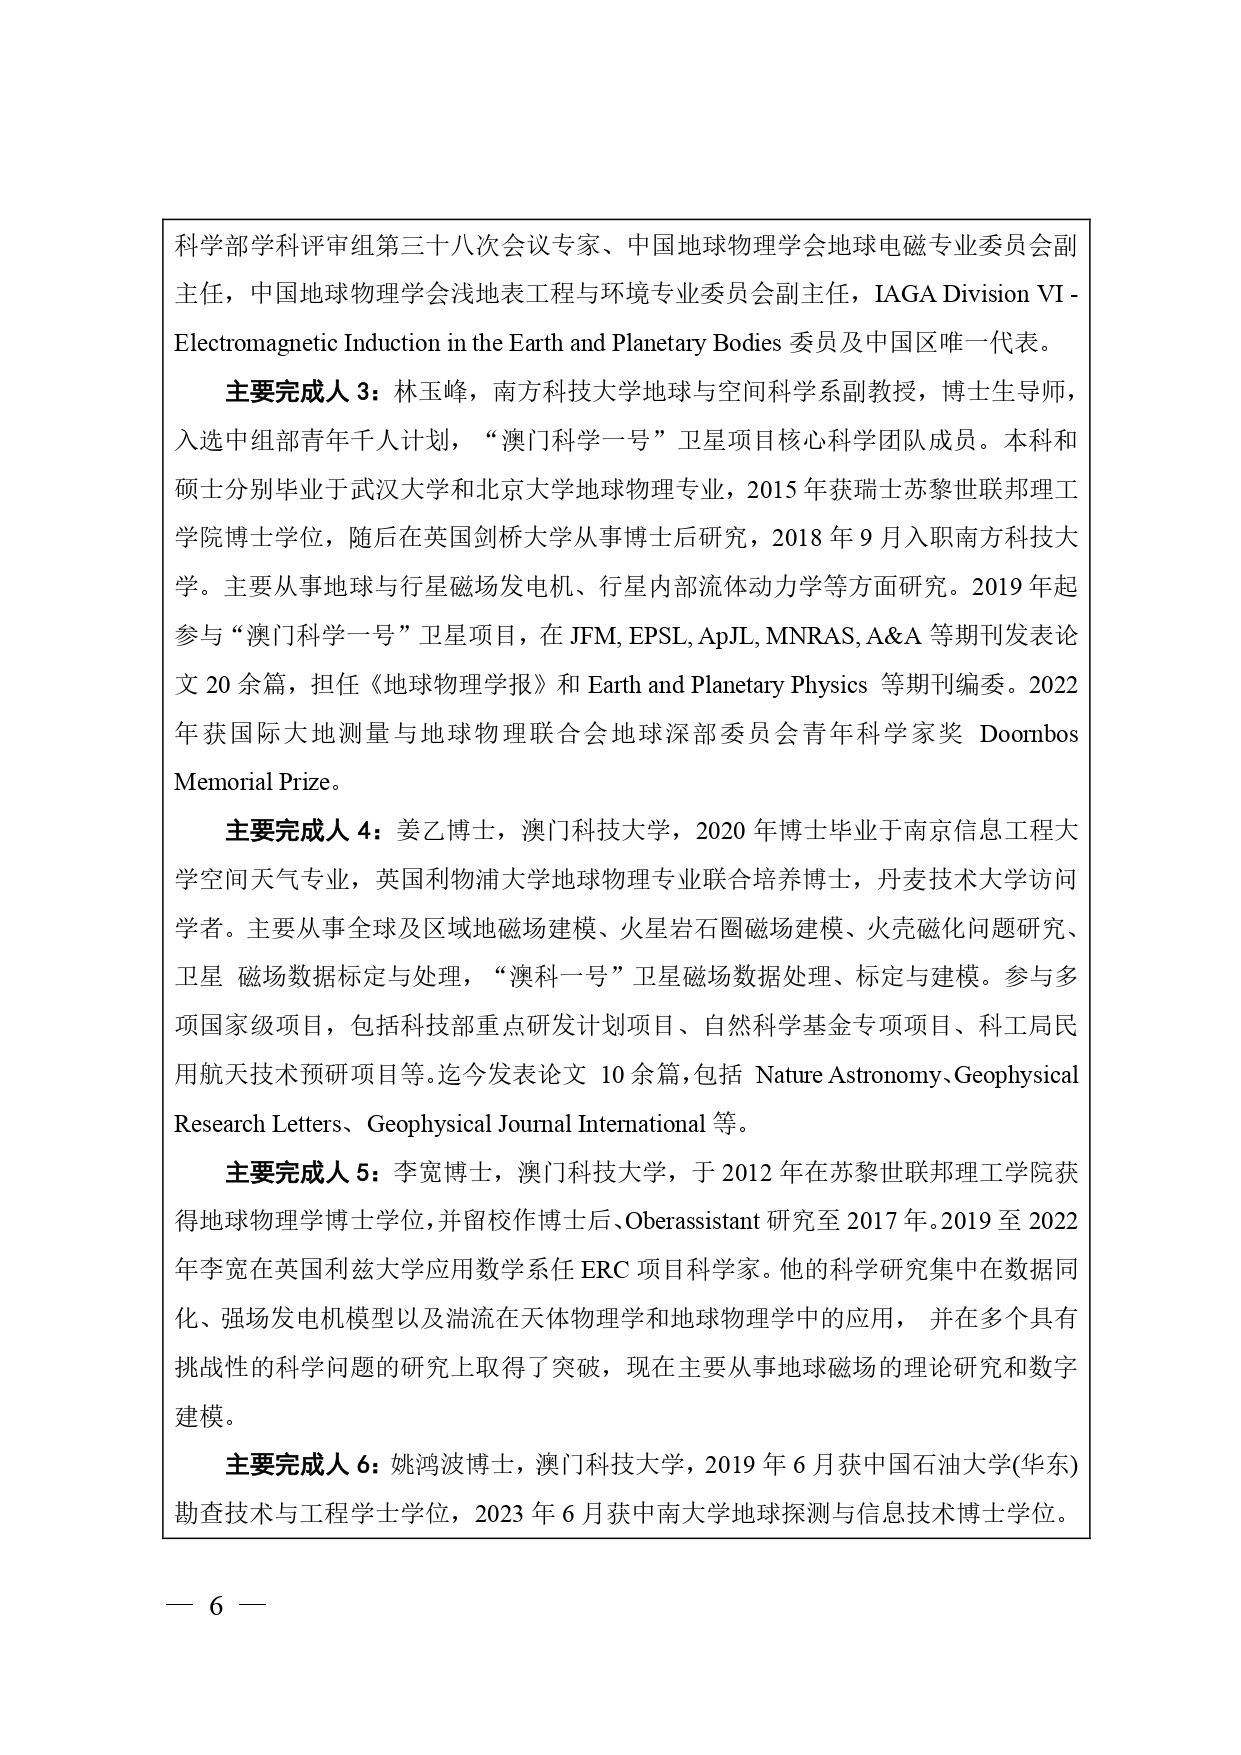 中国高等学校十大科技进展申报表 张可可终版3 page 0006